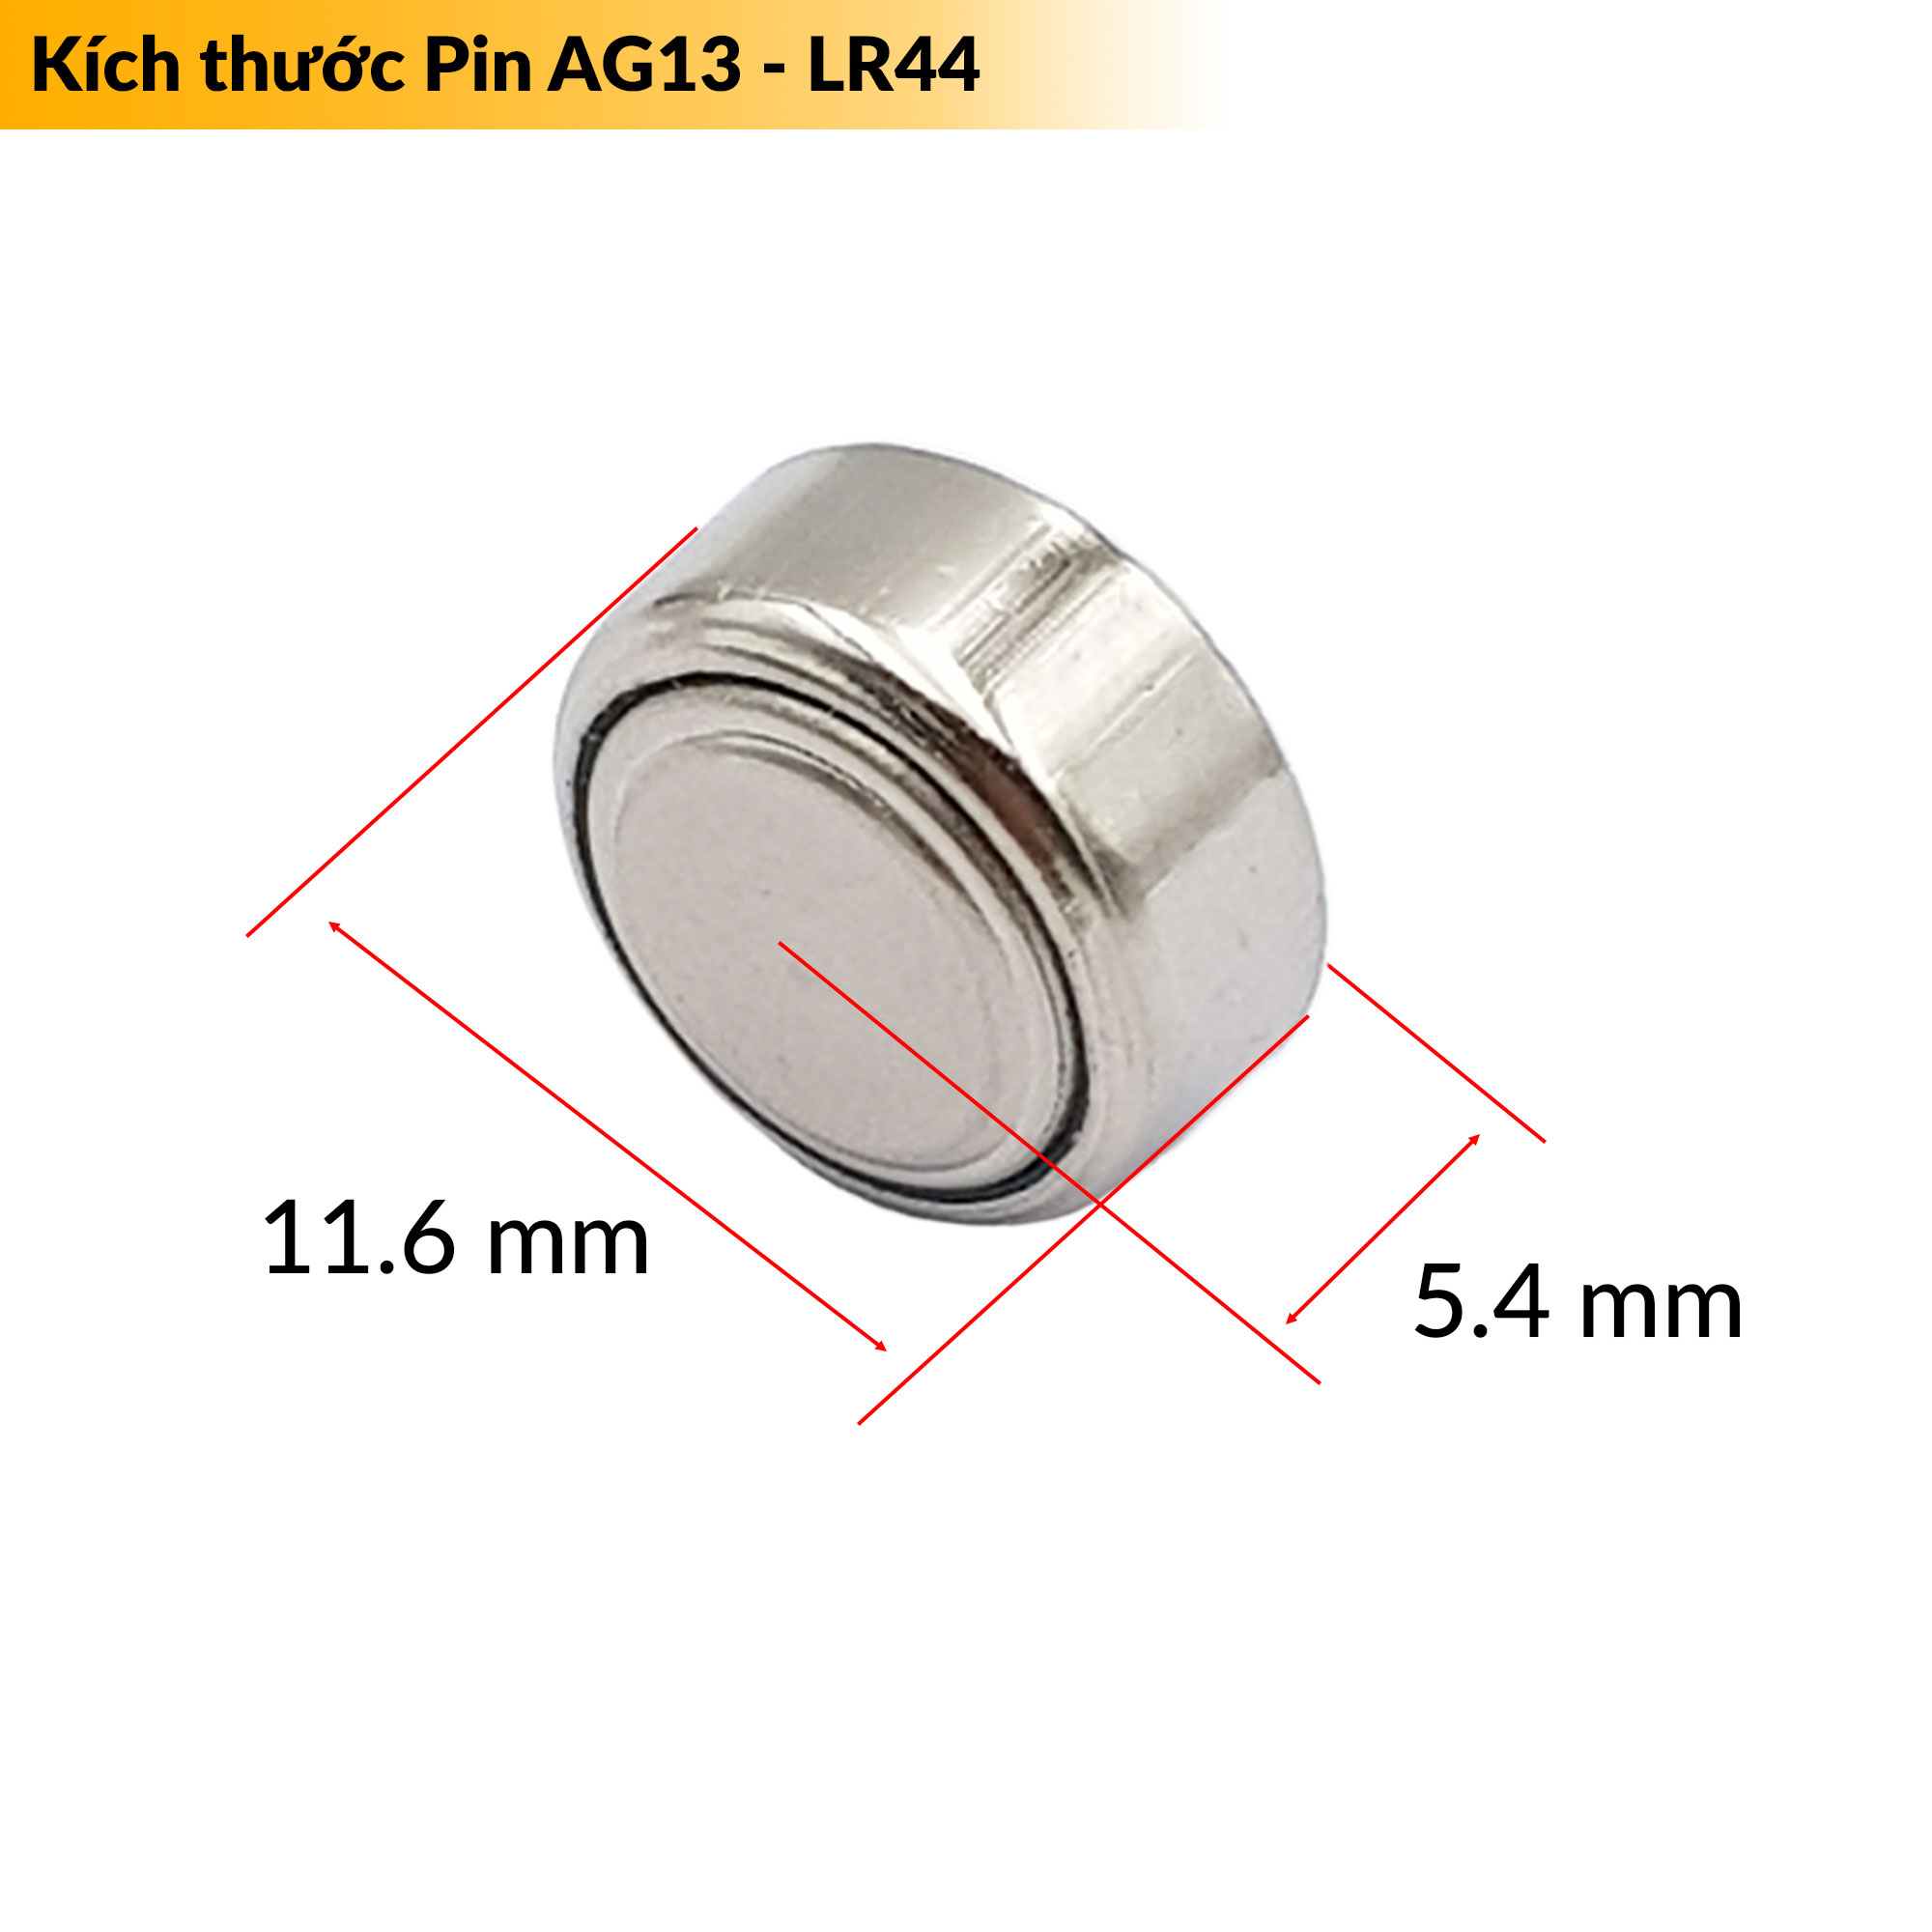 Kích thước pin cúc áo AG13 - LR44 - L1154 - A76 - 357A điện áp 1.5V